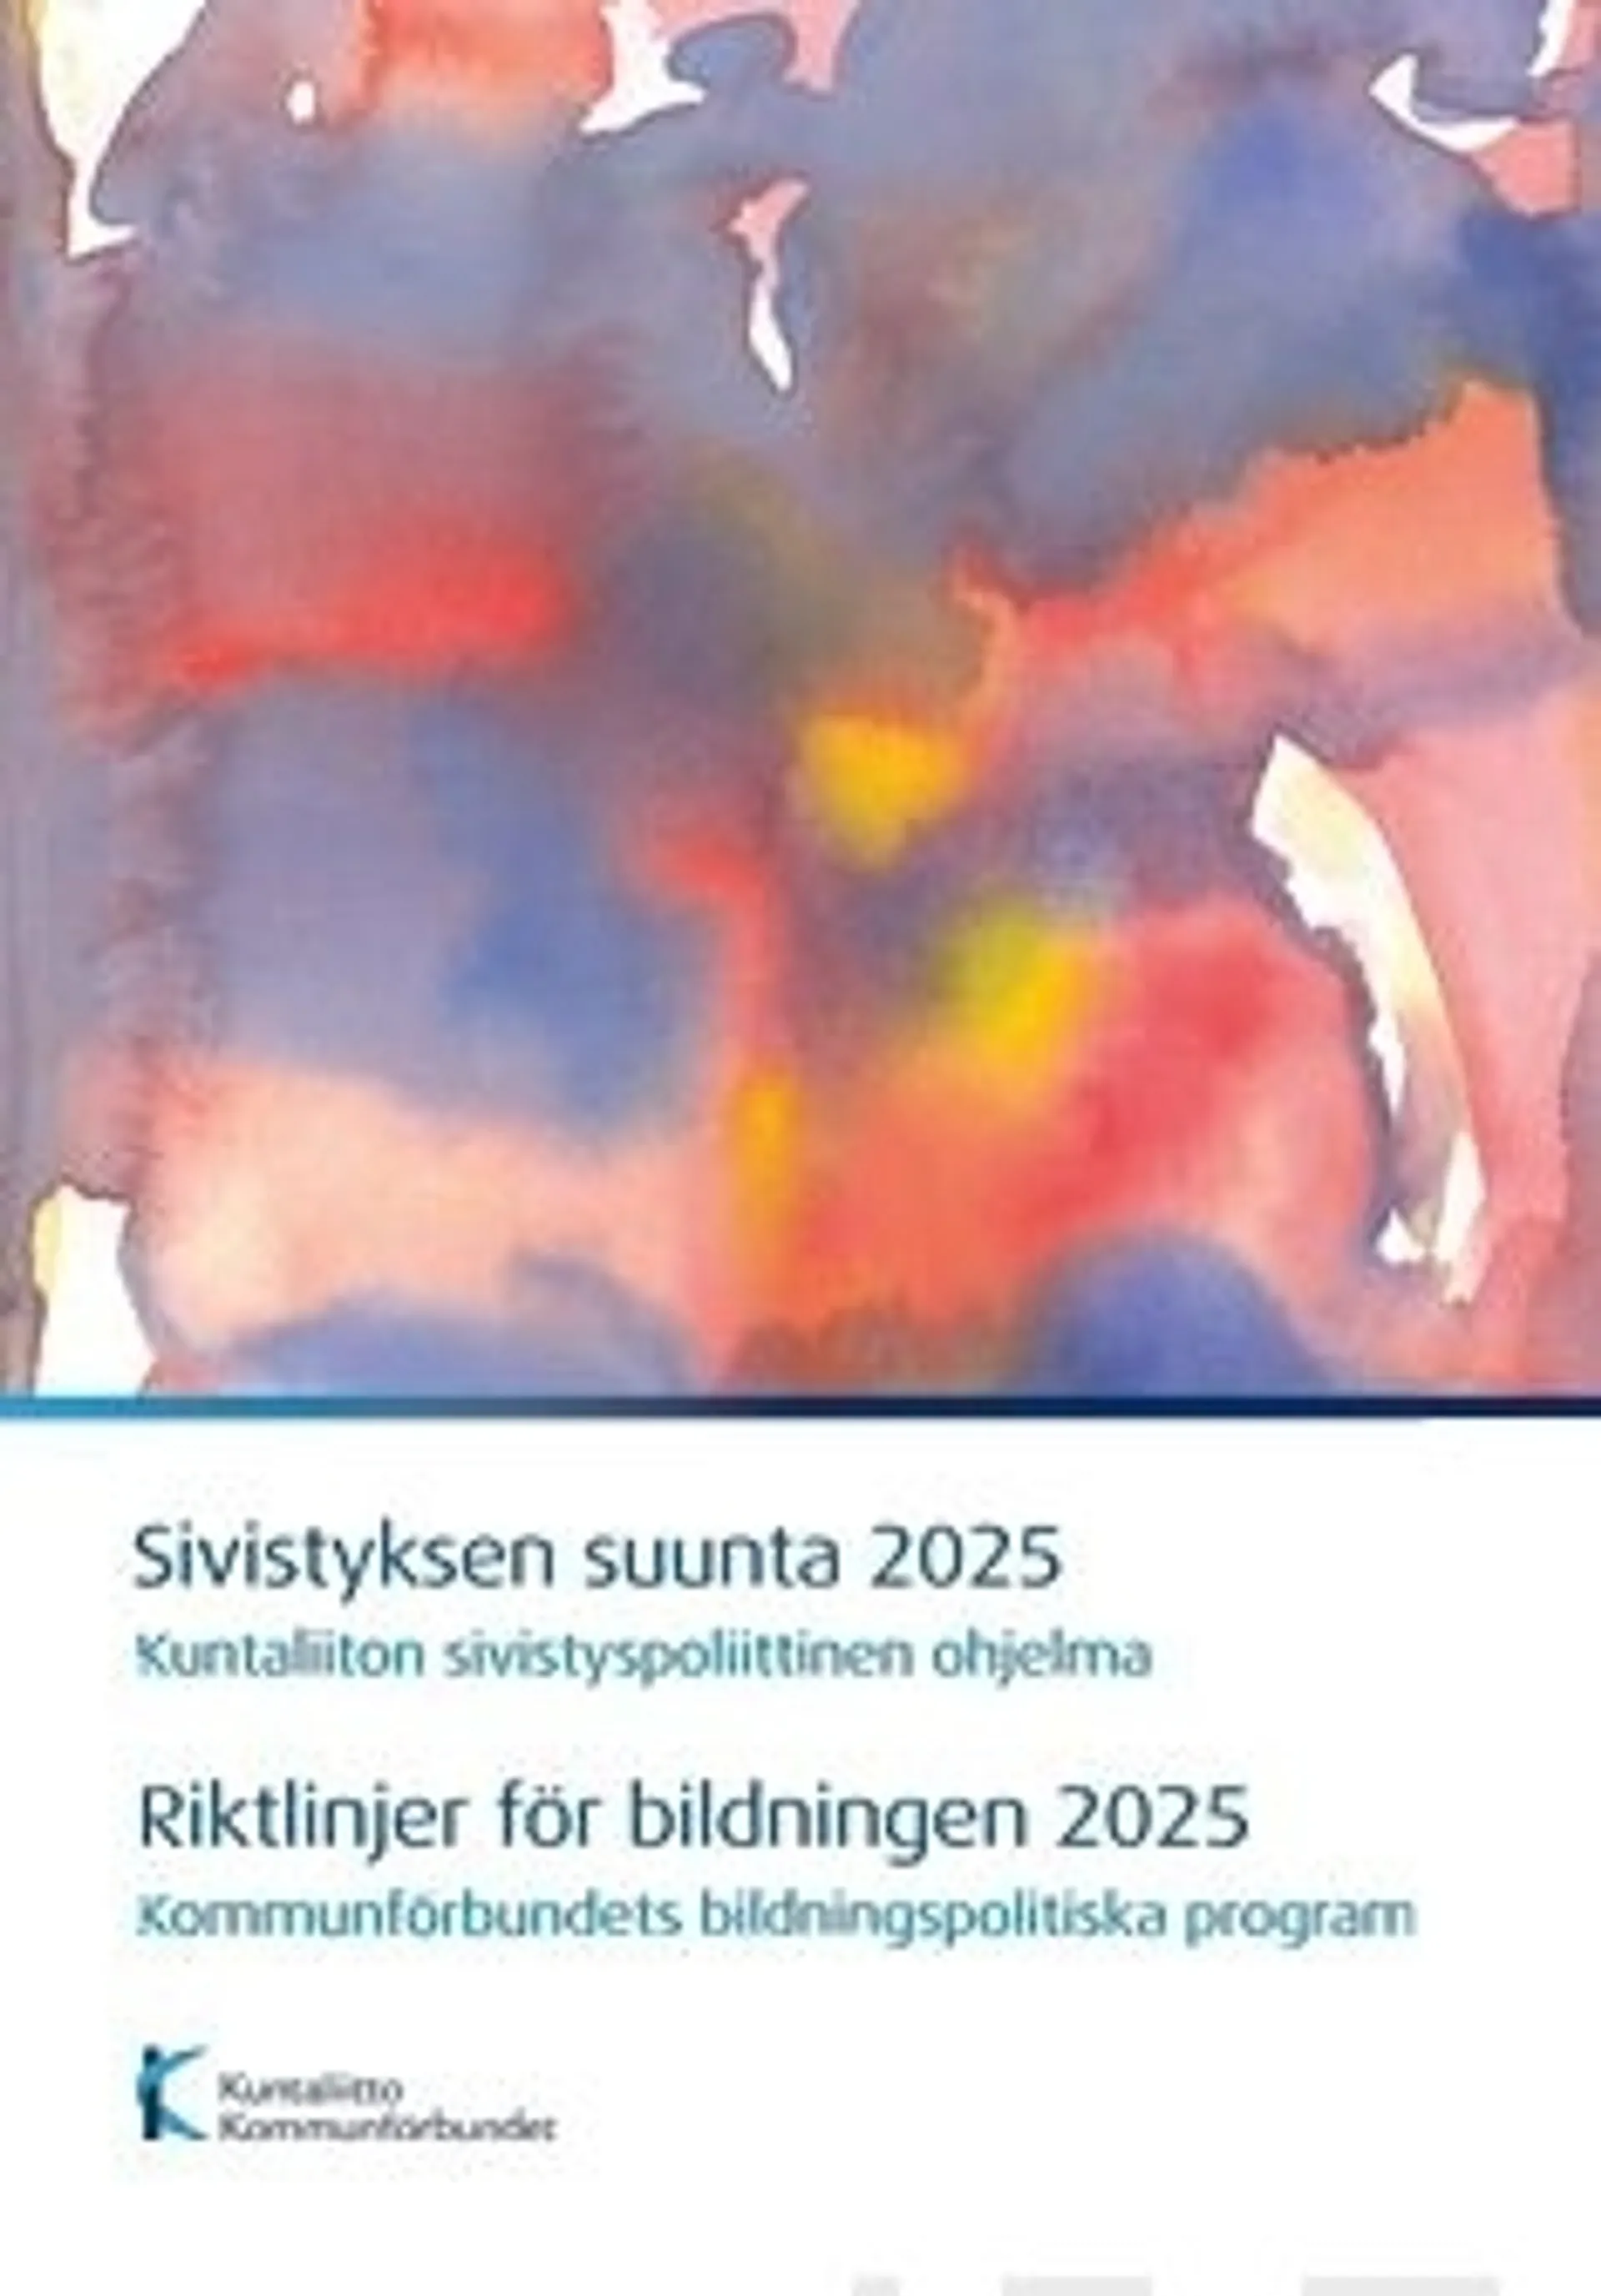 Sivistyksen suunta 2025 - Riktlinjer för bildningen 2025